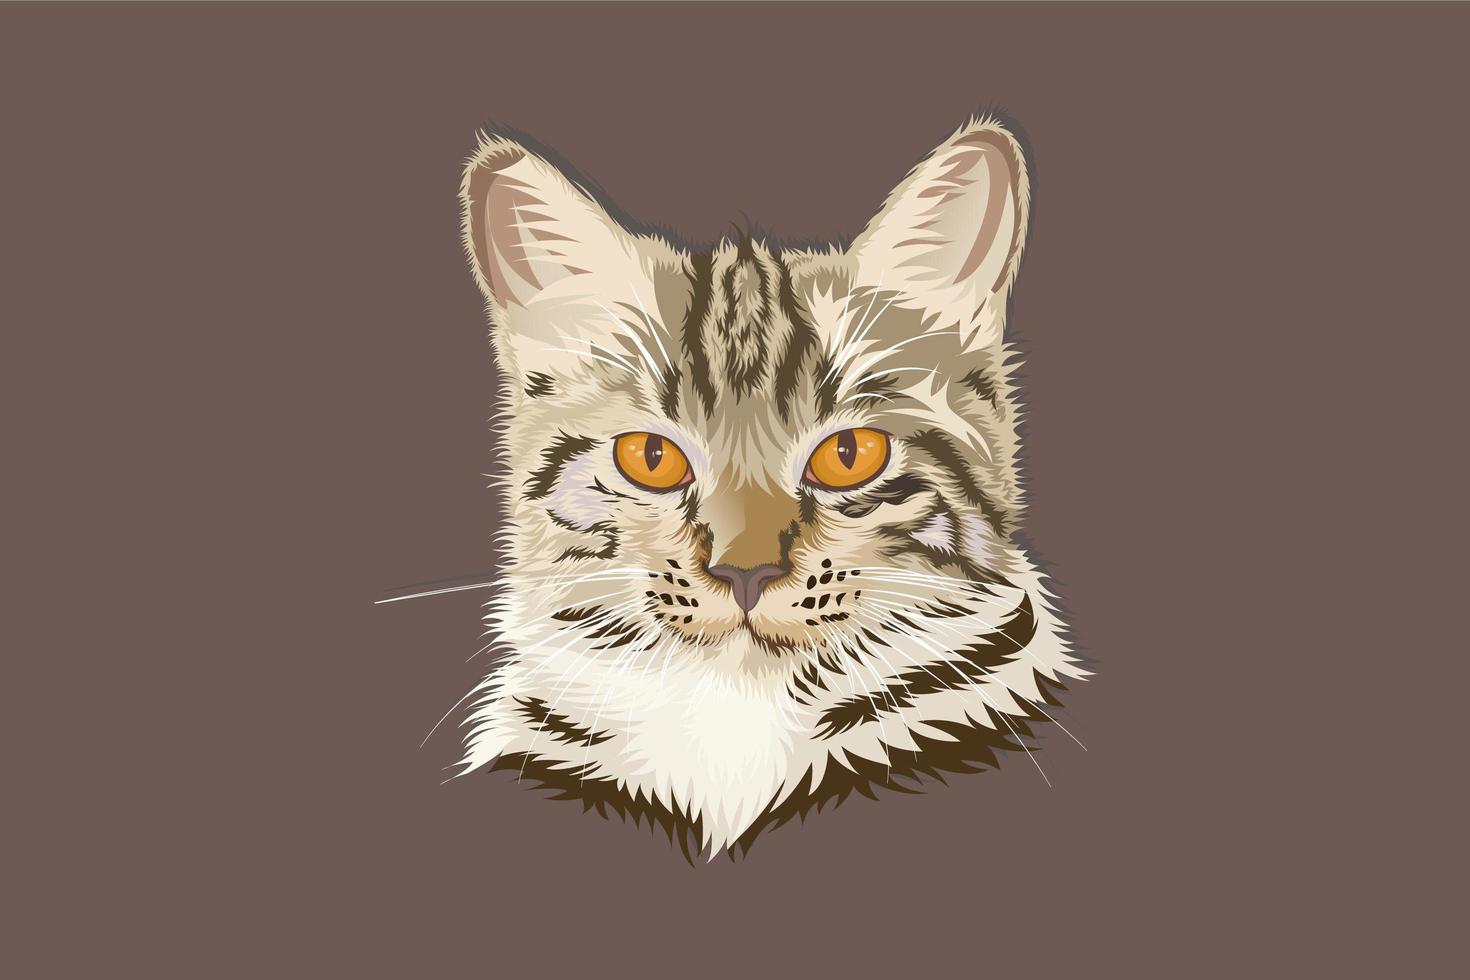 disegno a mano in stile realistico testa di gatto vettore